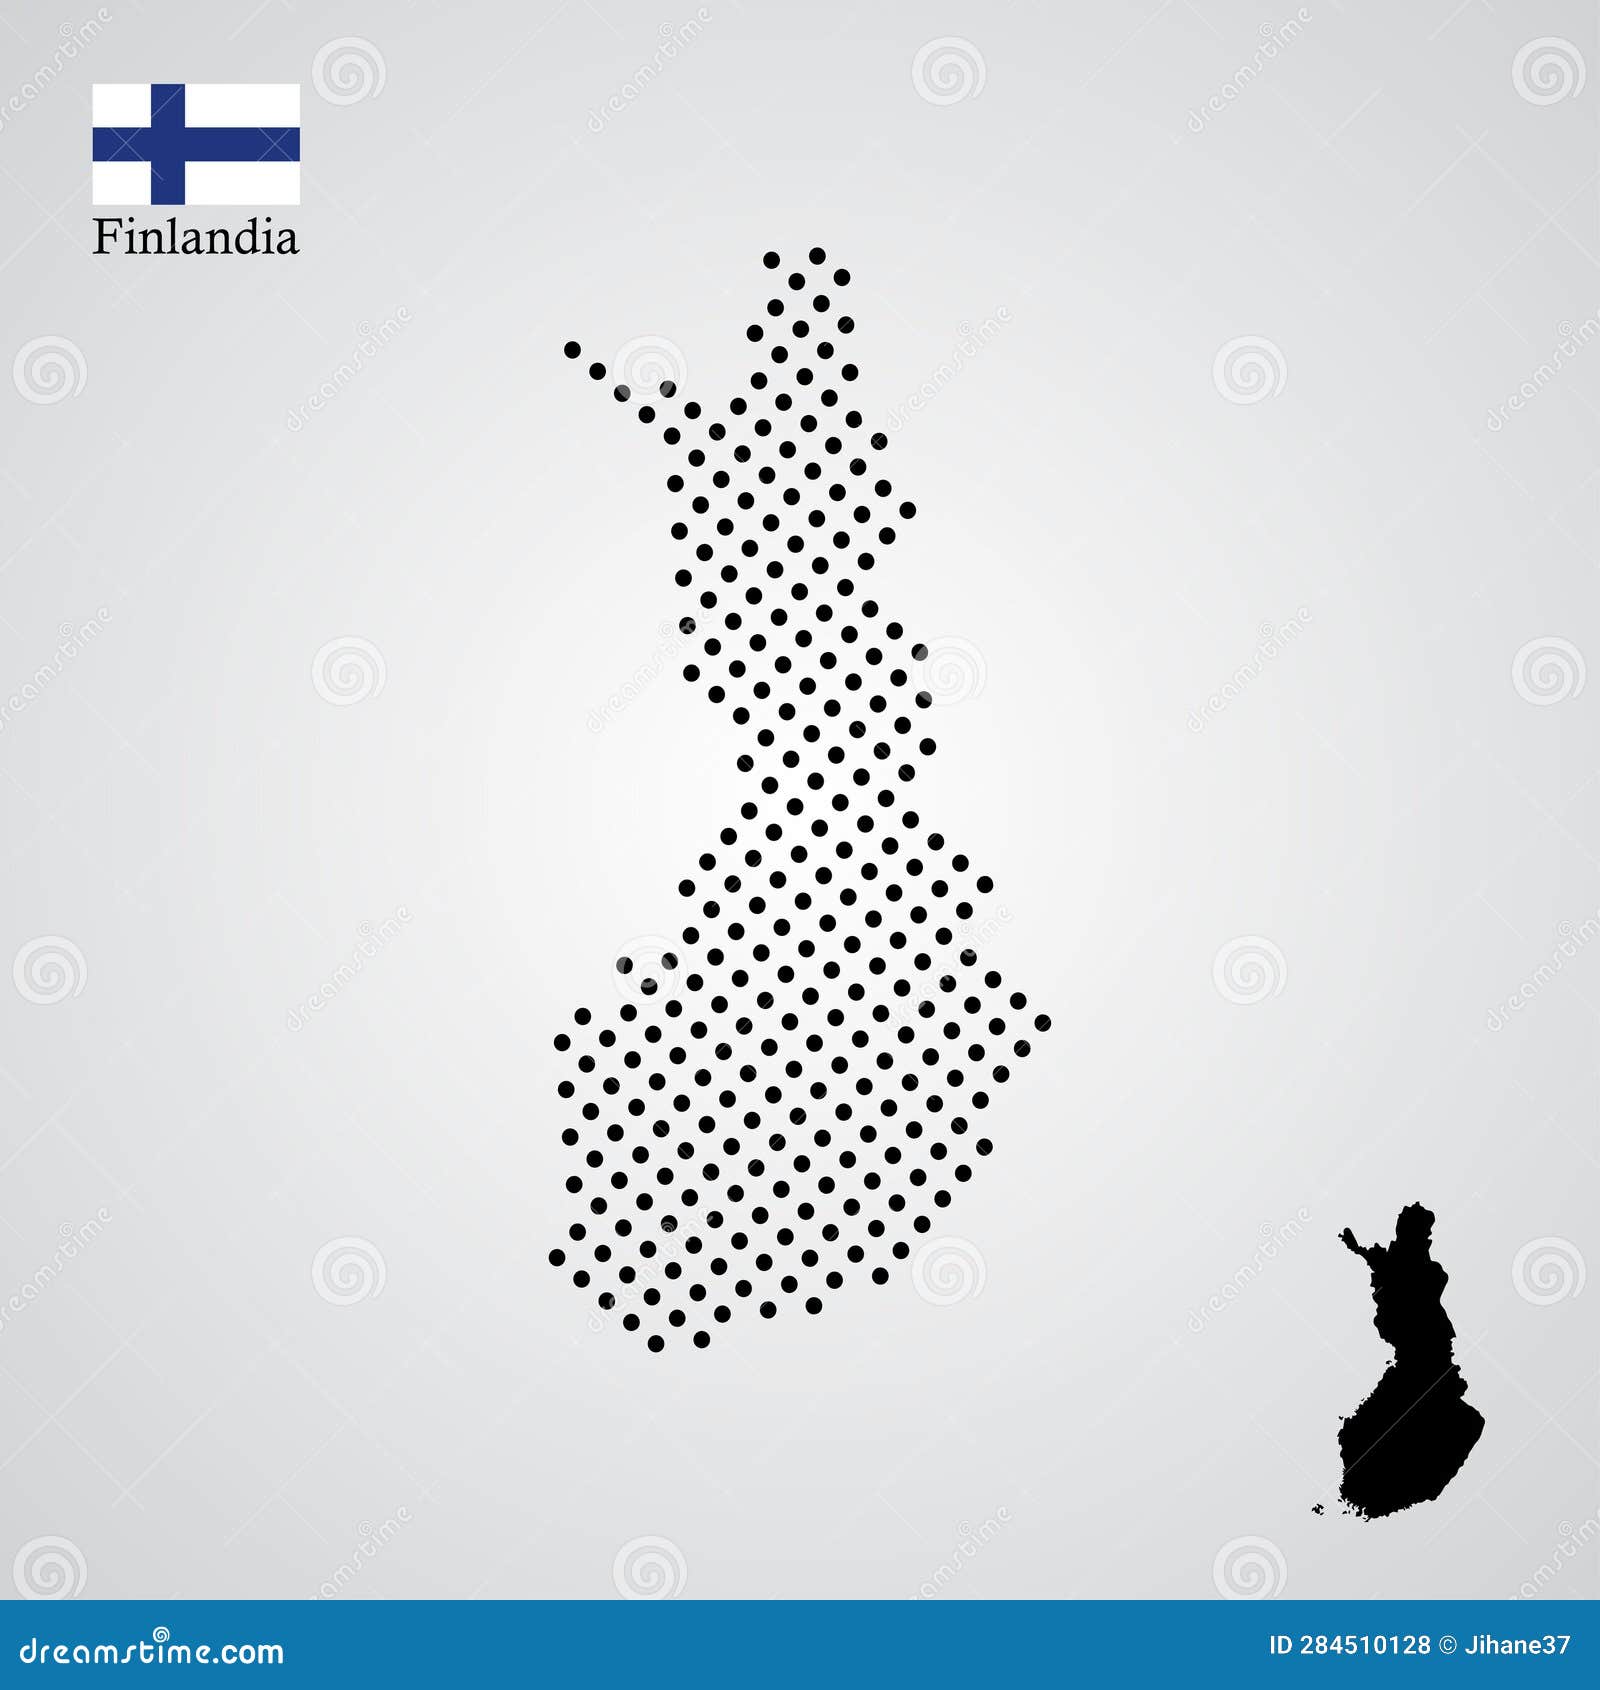 finlandia map silhouette halftone style